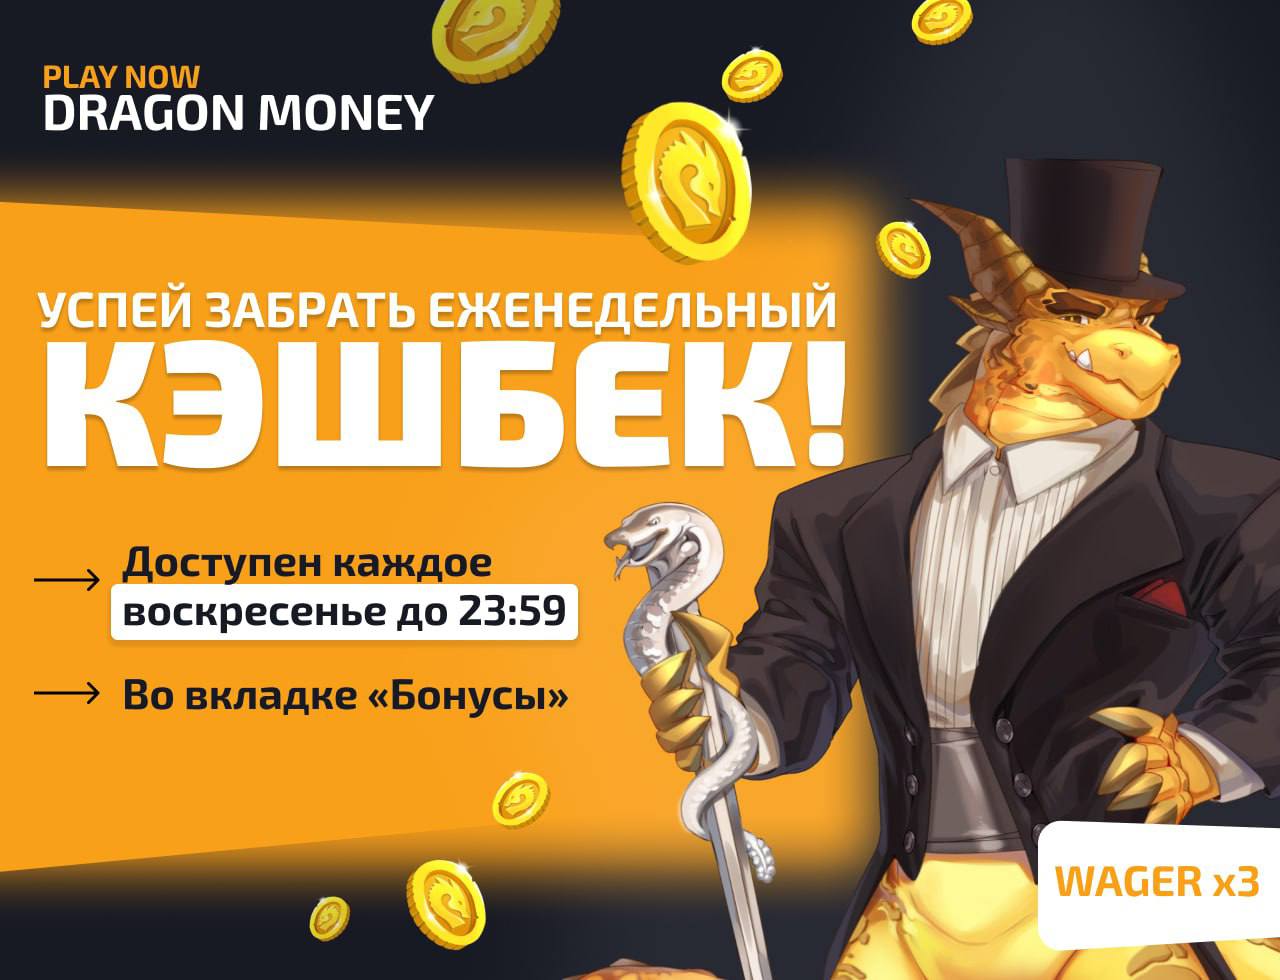 Как найти время на Dragon Money играть на официальном сайте с бонусом за регистрацию на Facebook